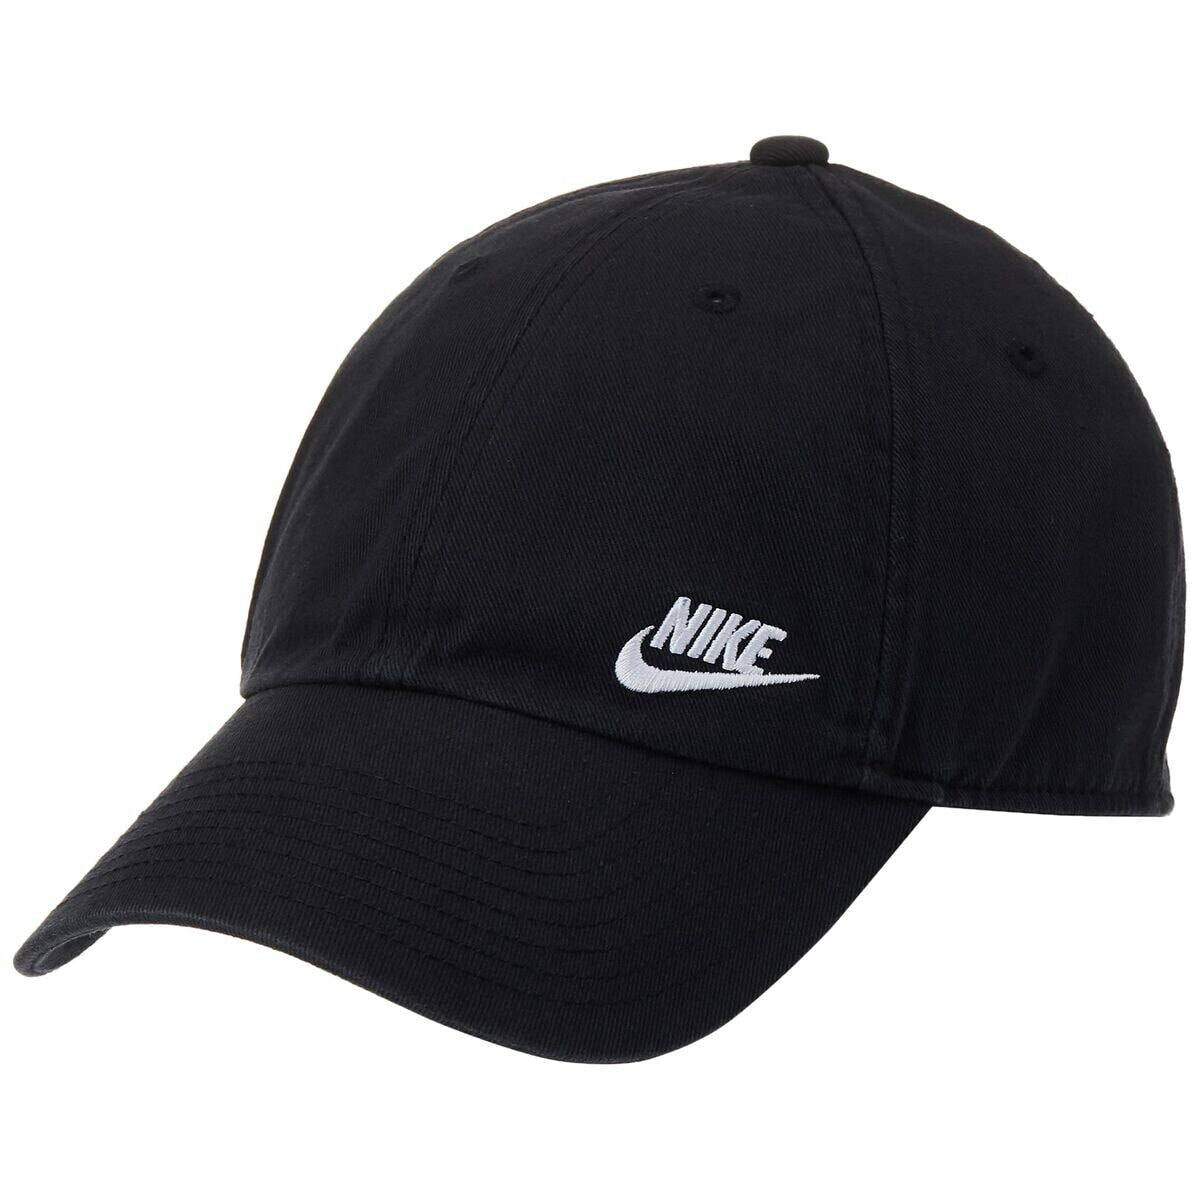 Спортивная кепка Nike HERITAGE 86 AO8662 010 Чёрный Один размер